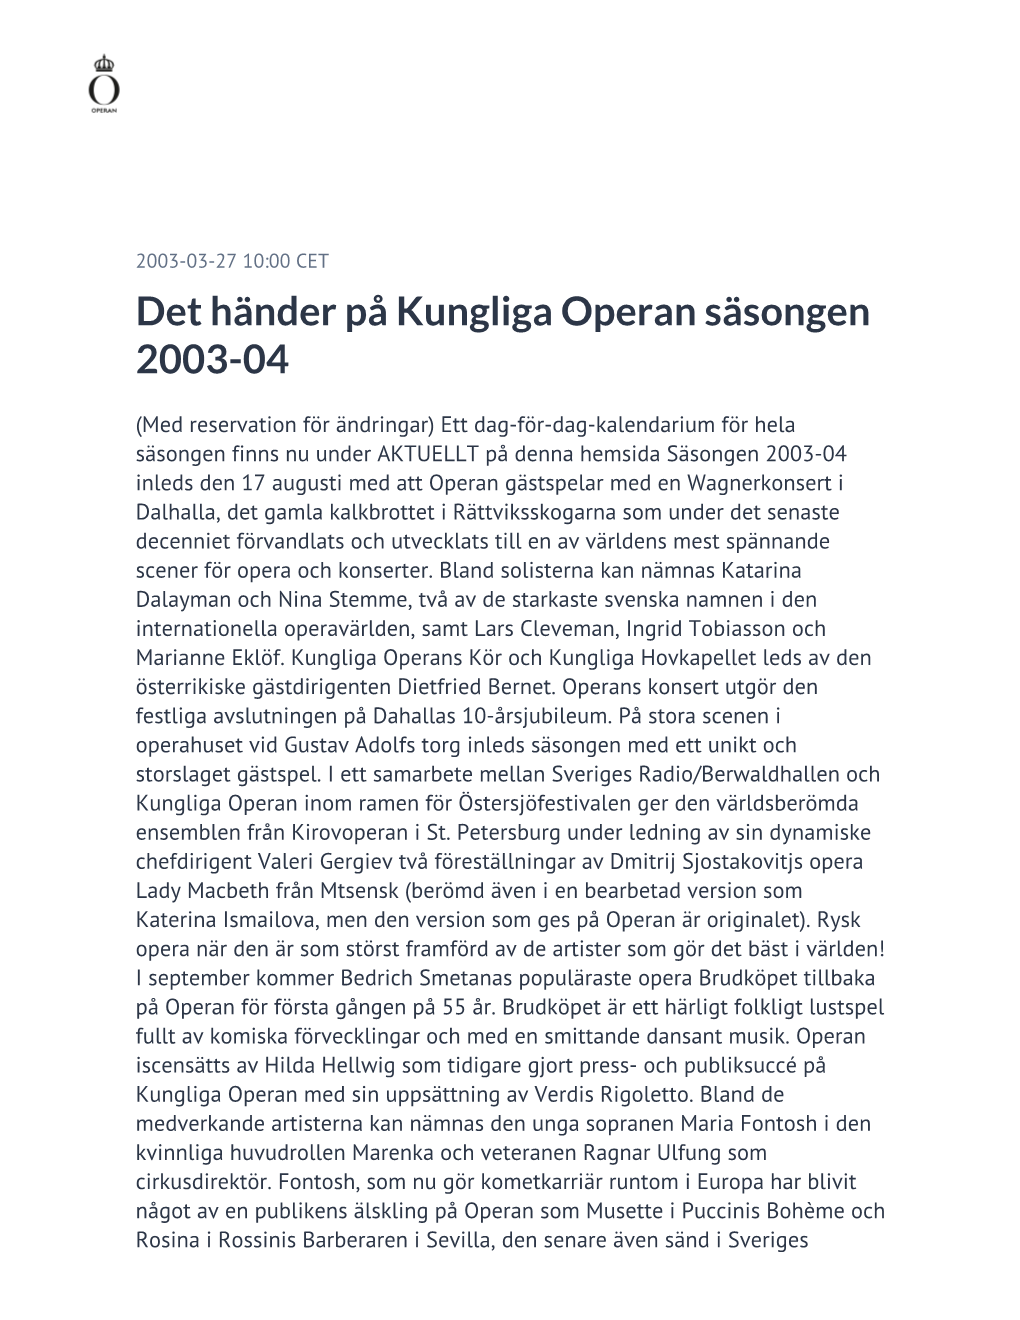 Det Händer På Kungliga Operan Säsongen 2003-04